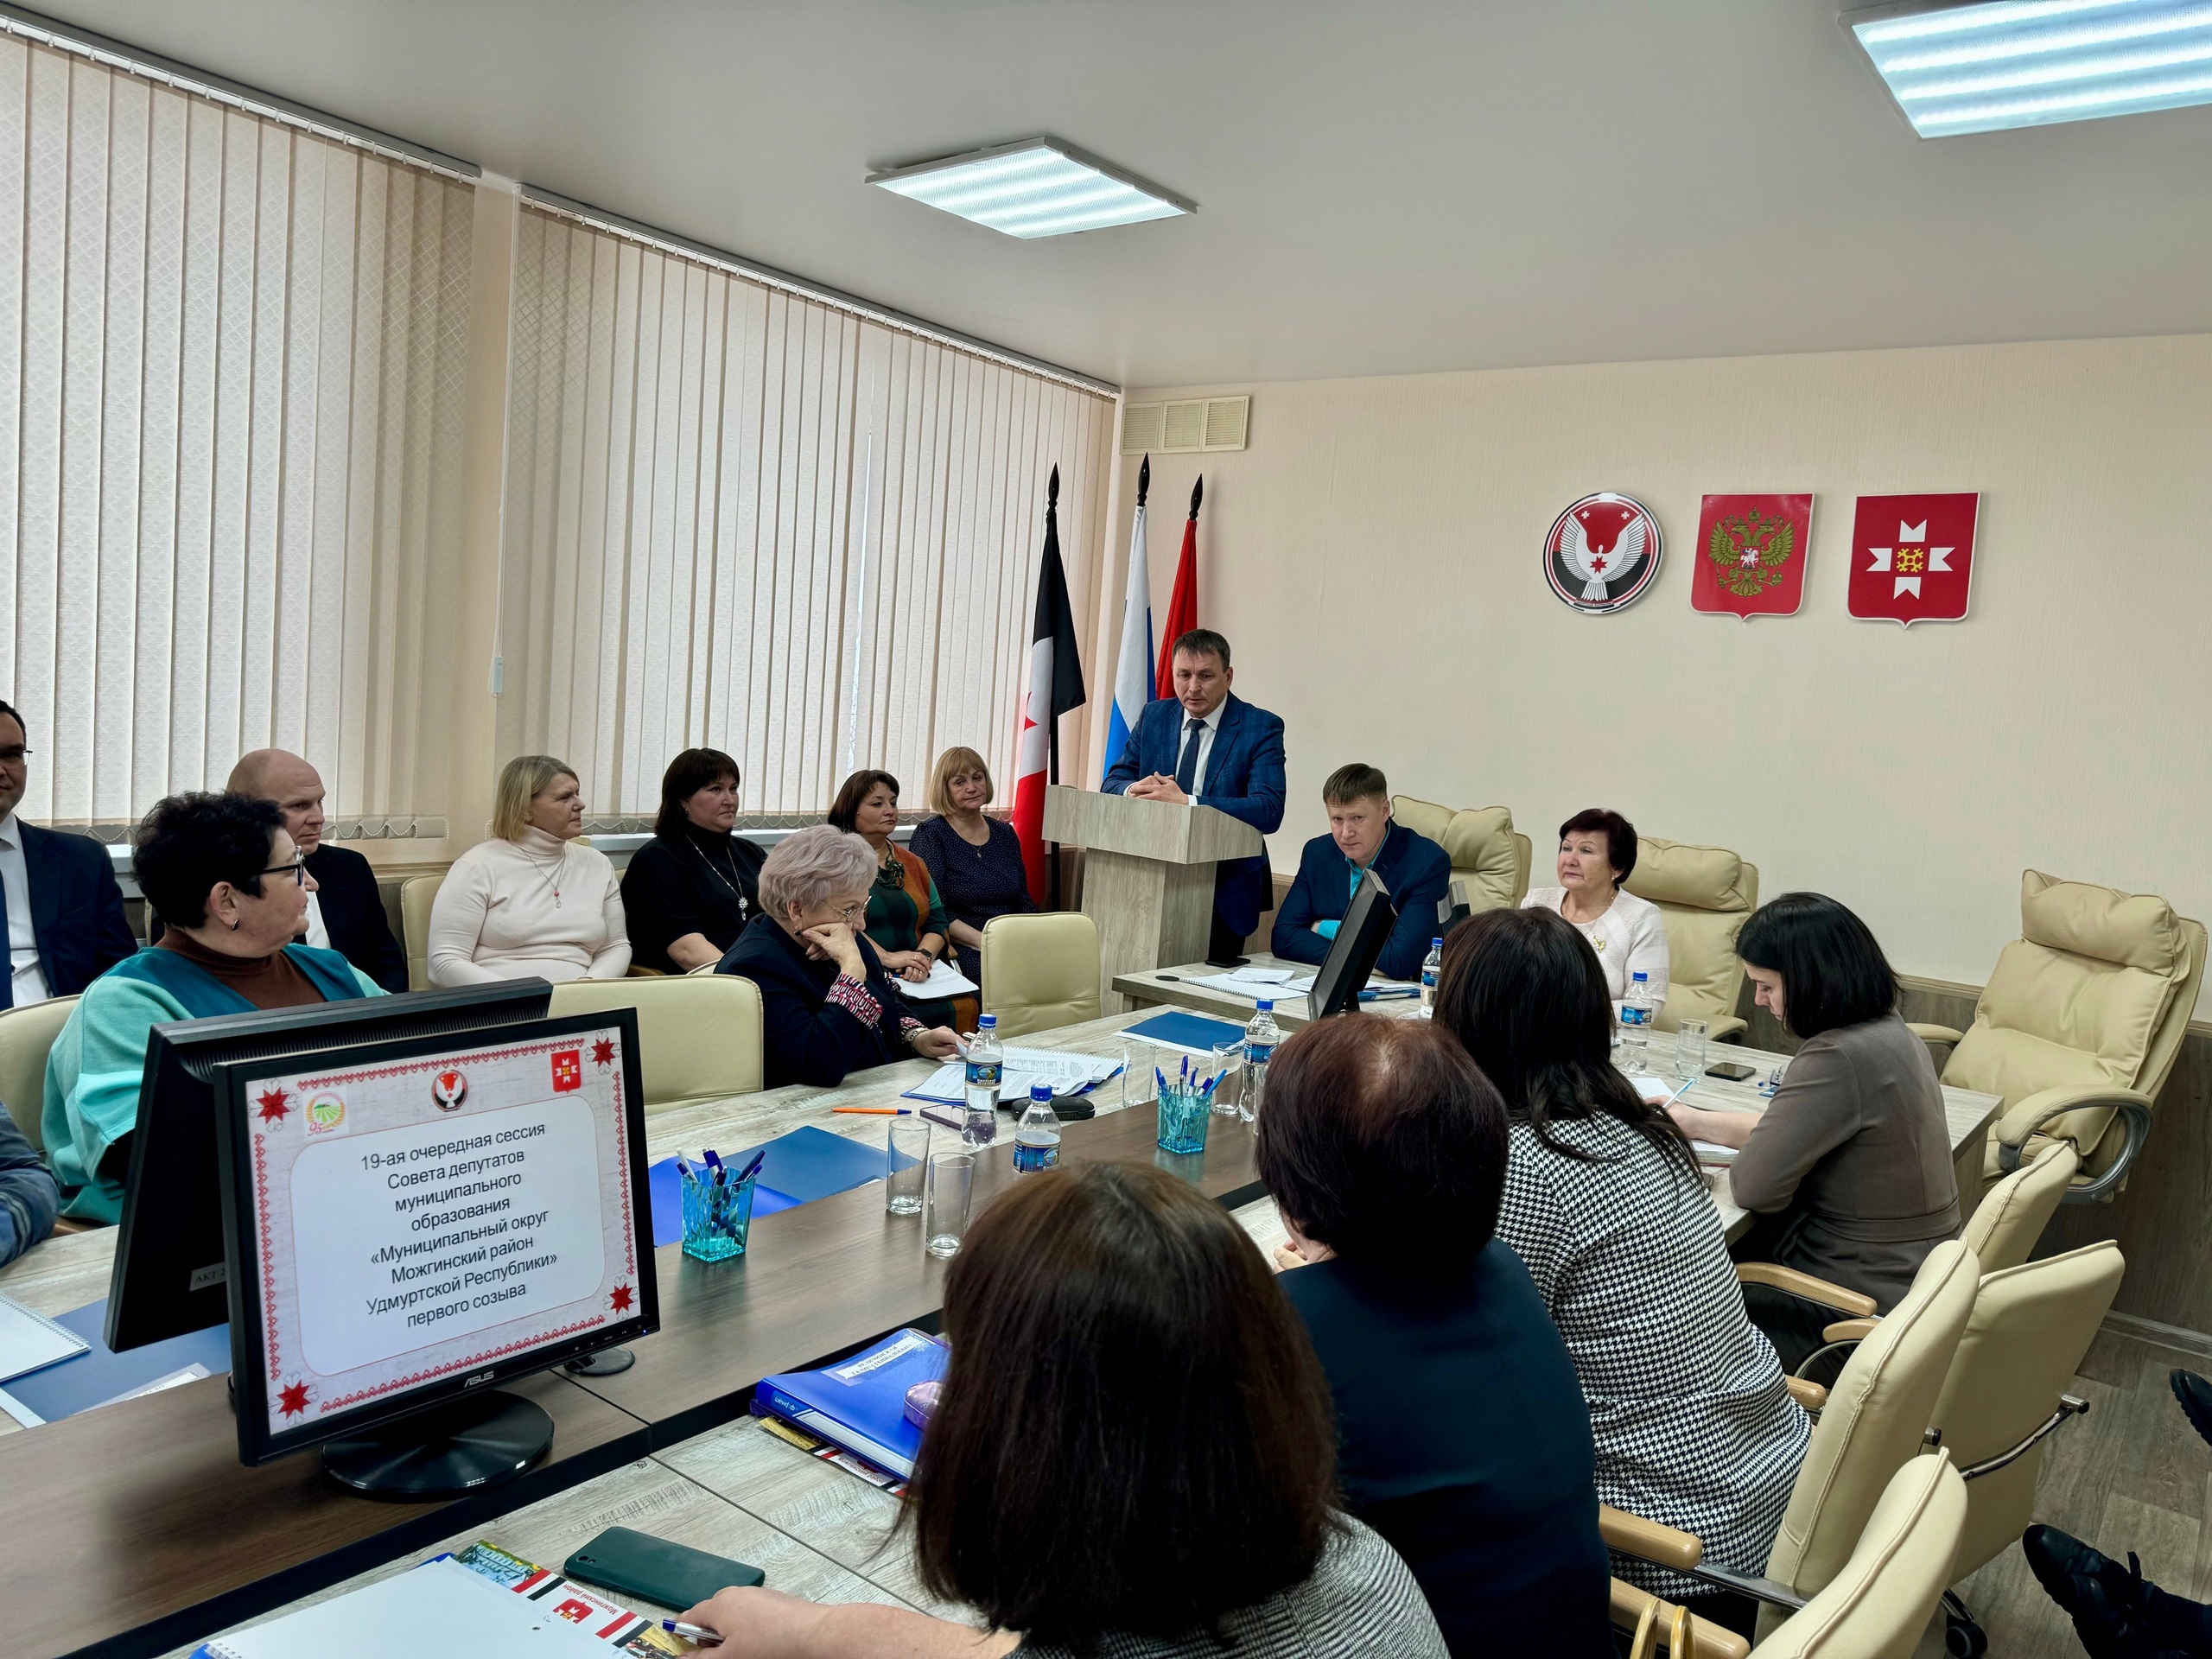 19-я сессия Совета депутатов Можгинского района состоялась сегодня, 7 февраля, в зале заседаний Администрации района..